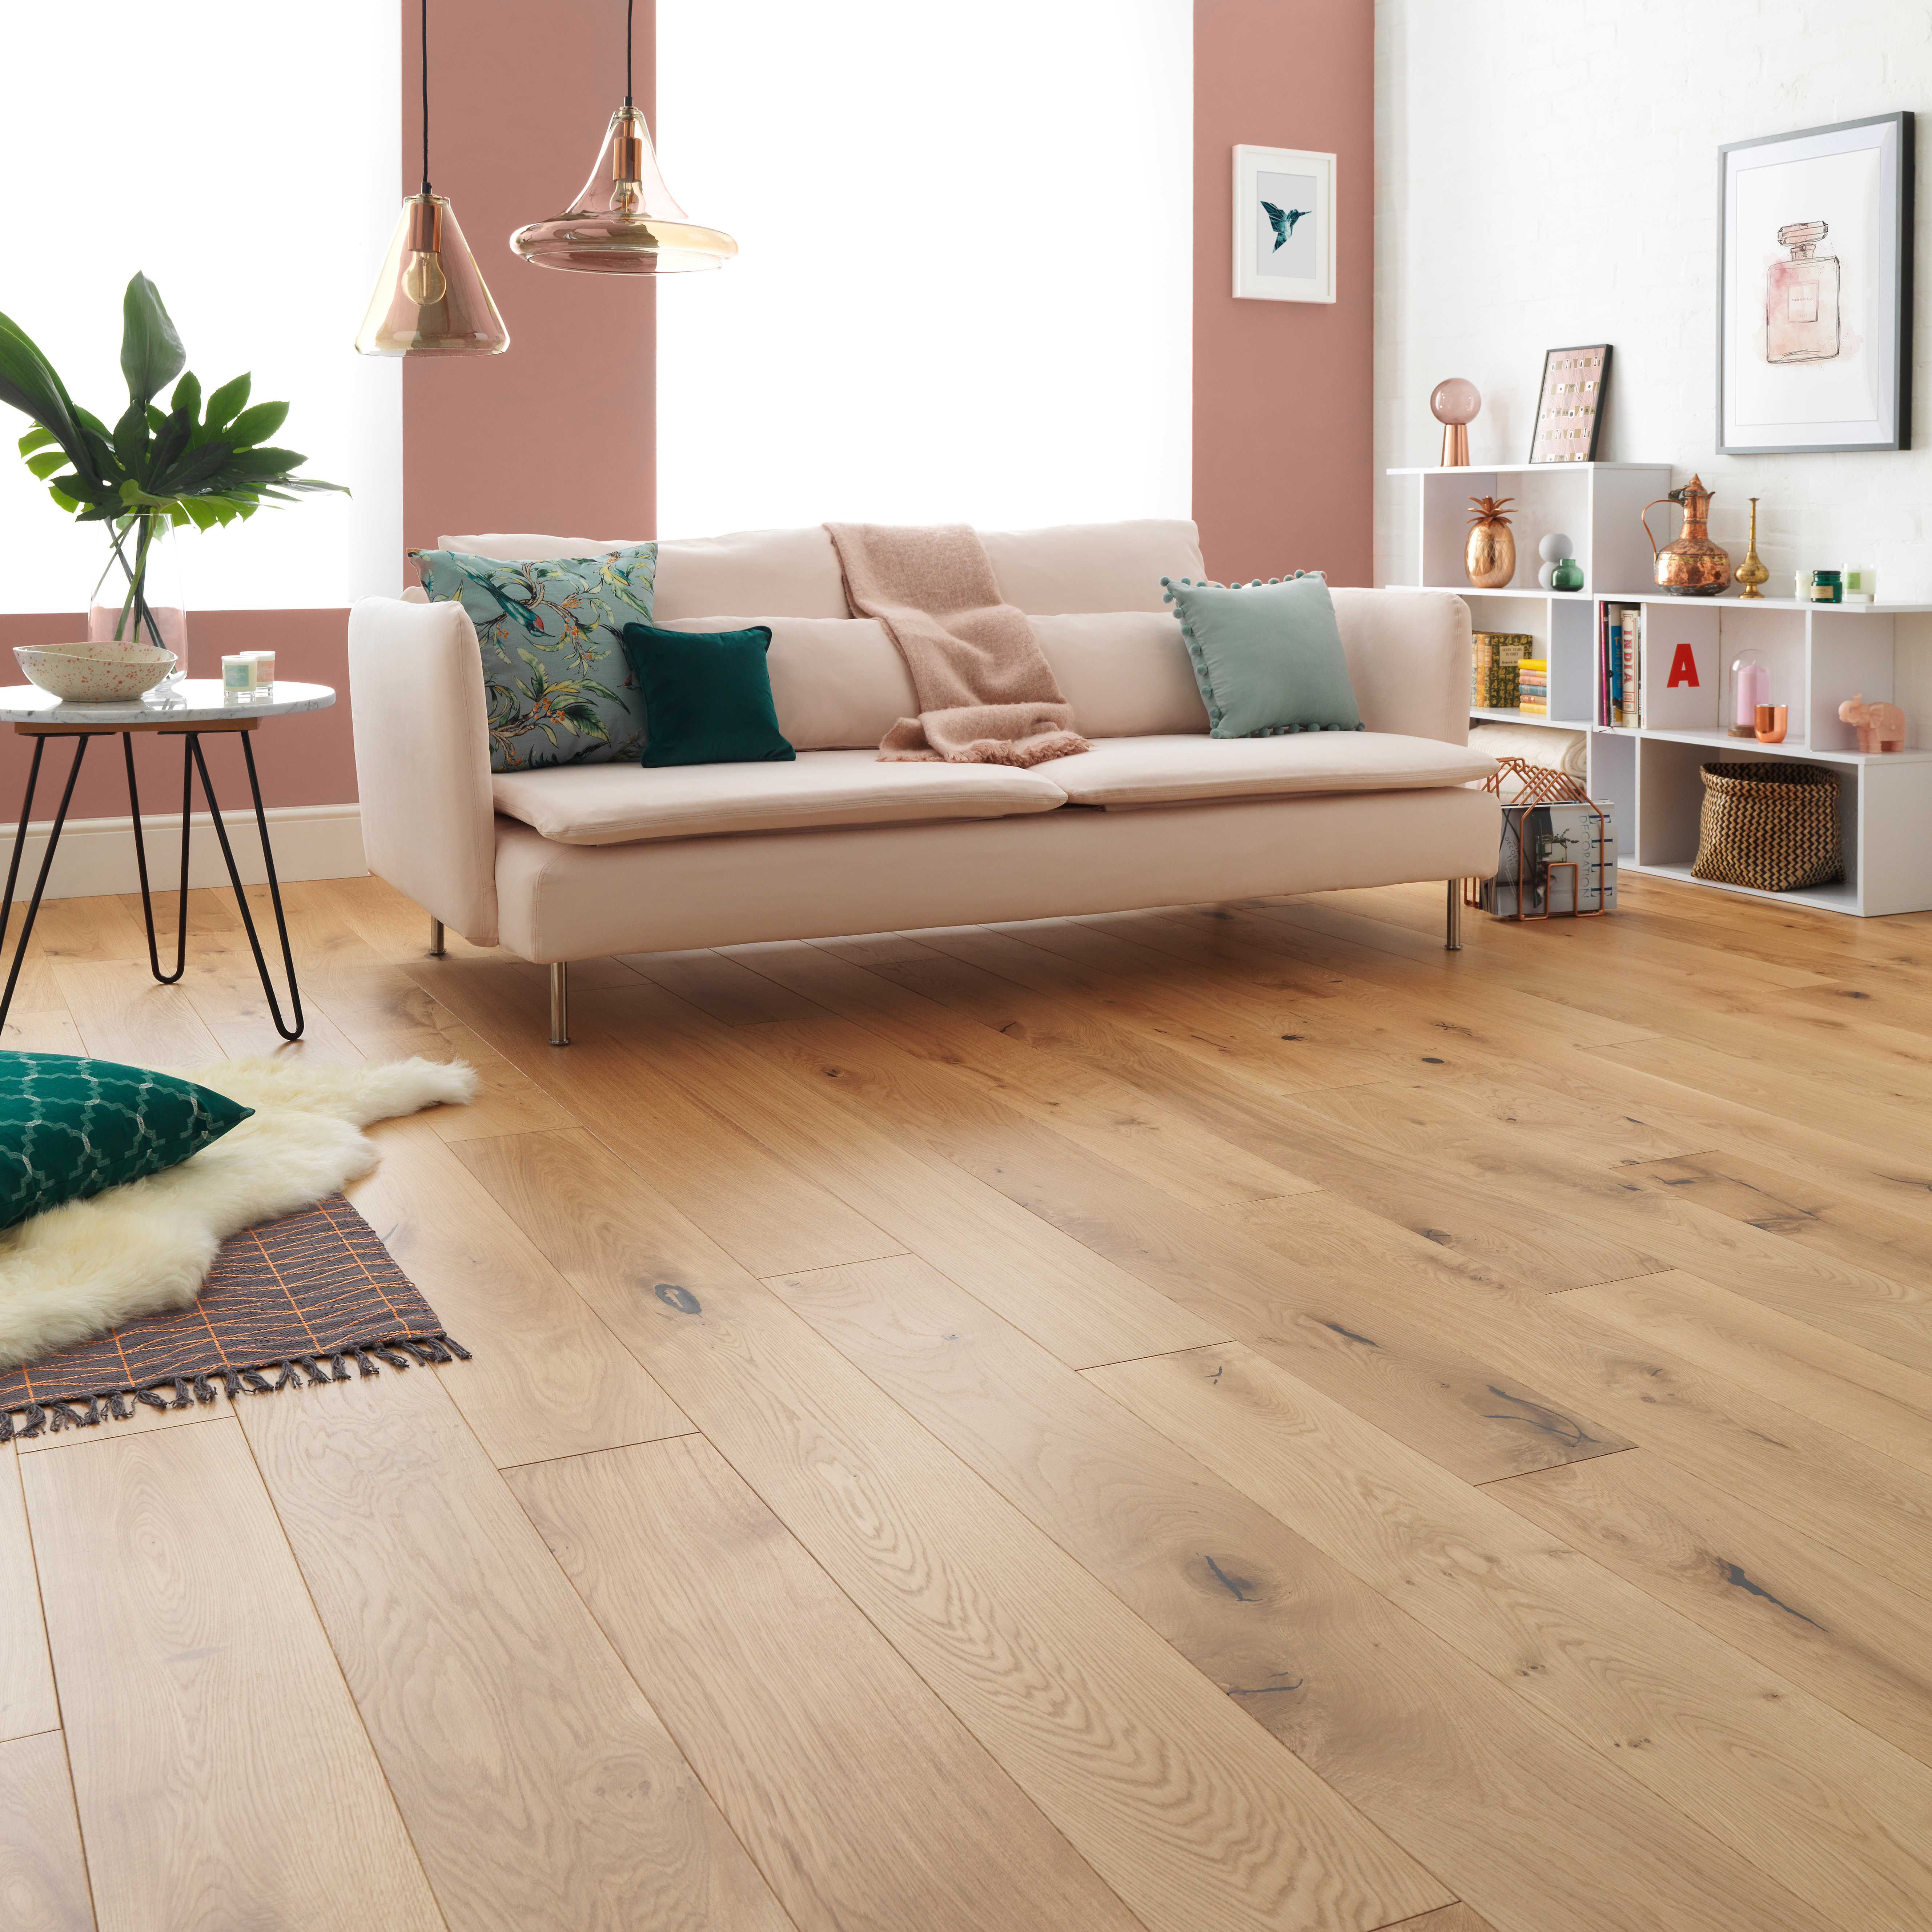 Wide Plank Flooring Trend Wood, Wide Long Plank Laminate Flooring